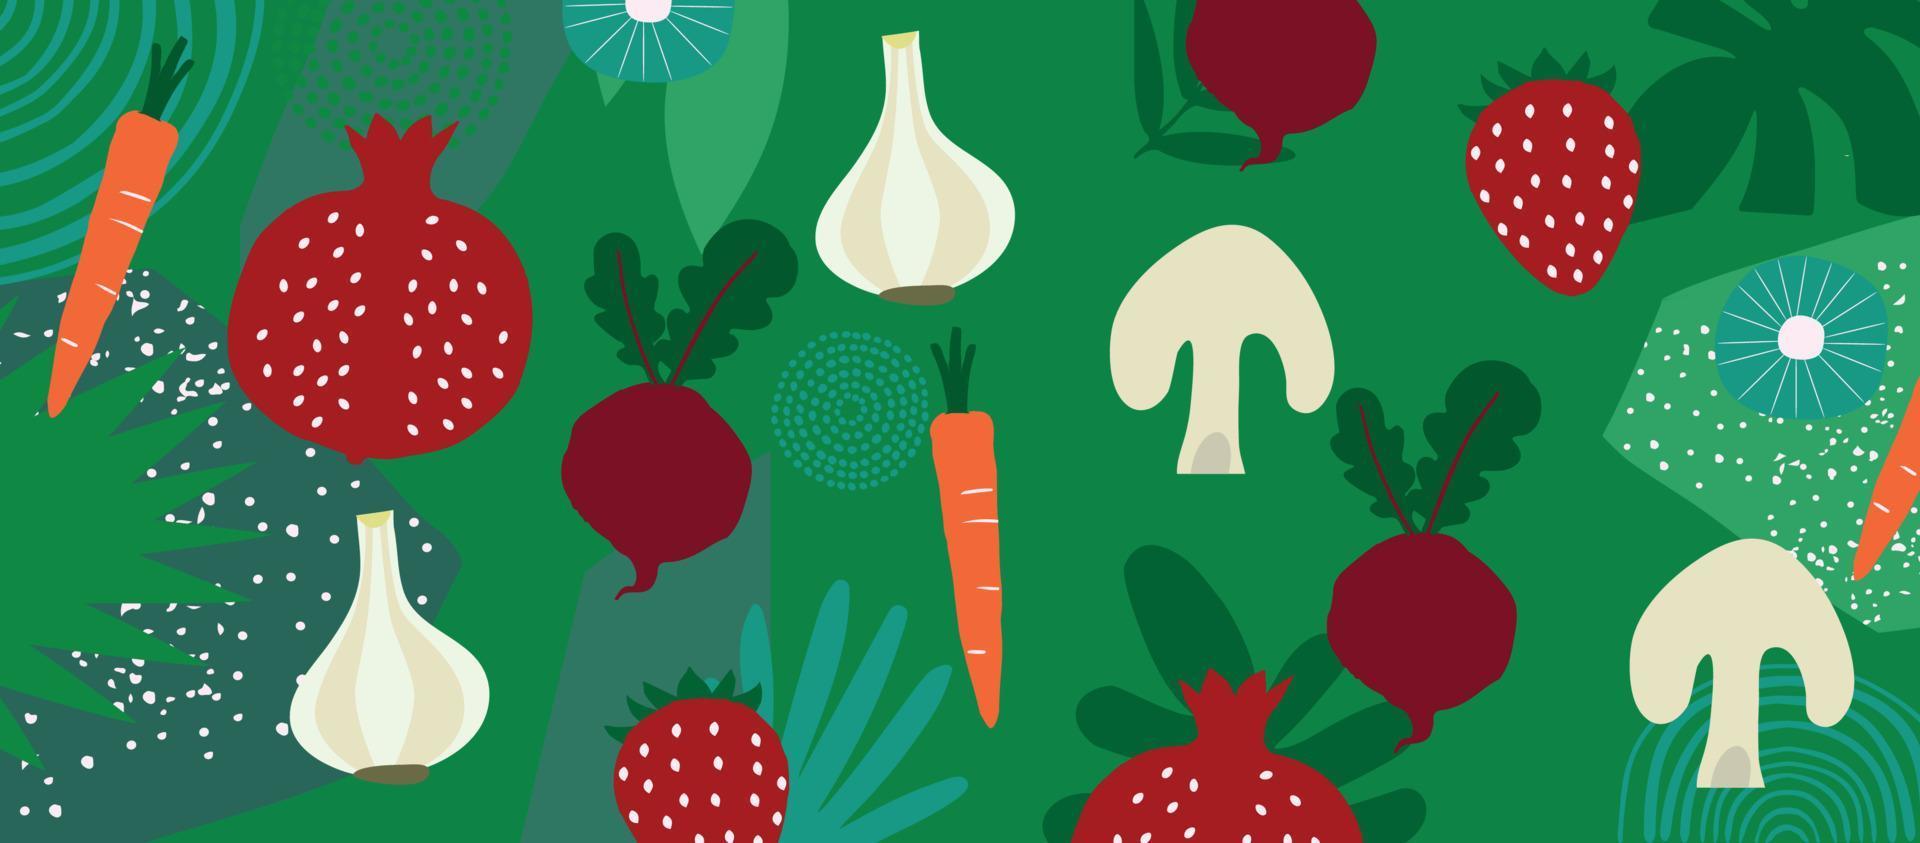 exotische groenten en fruit poster. zomer tropisch ontwerp met aardbei, granaatappel, knoflook, wortel, rode biet, paddestoel kleurrijke mix. gezonde voeding, veganistisch eten achtergrond vectorillustratie vector